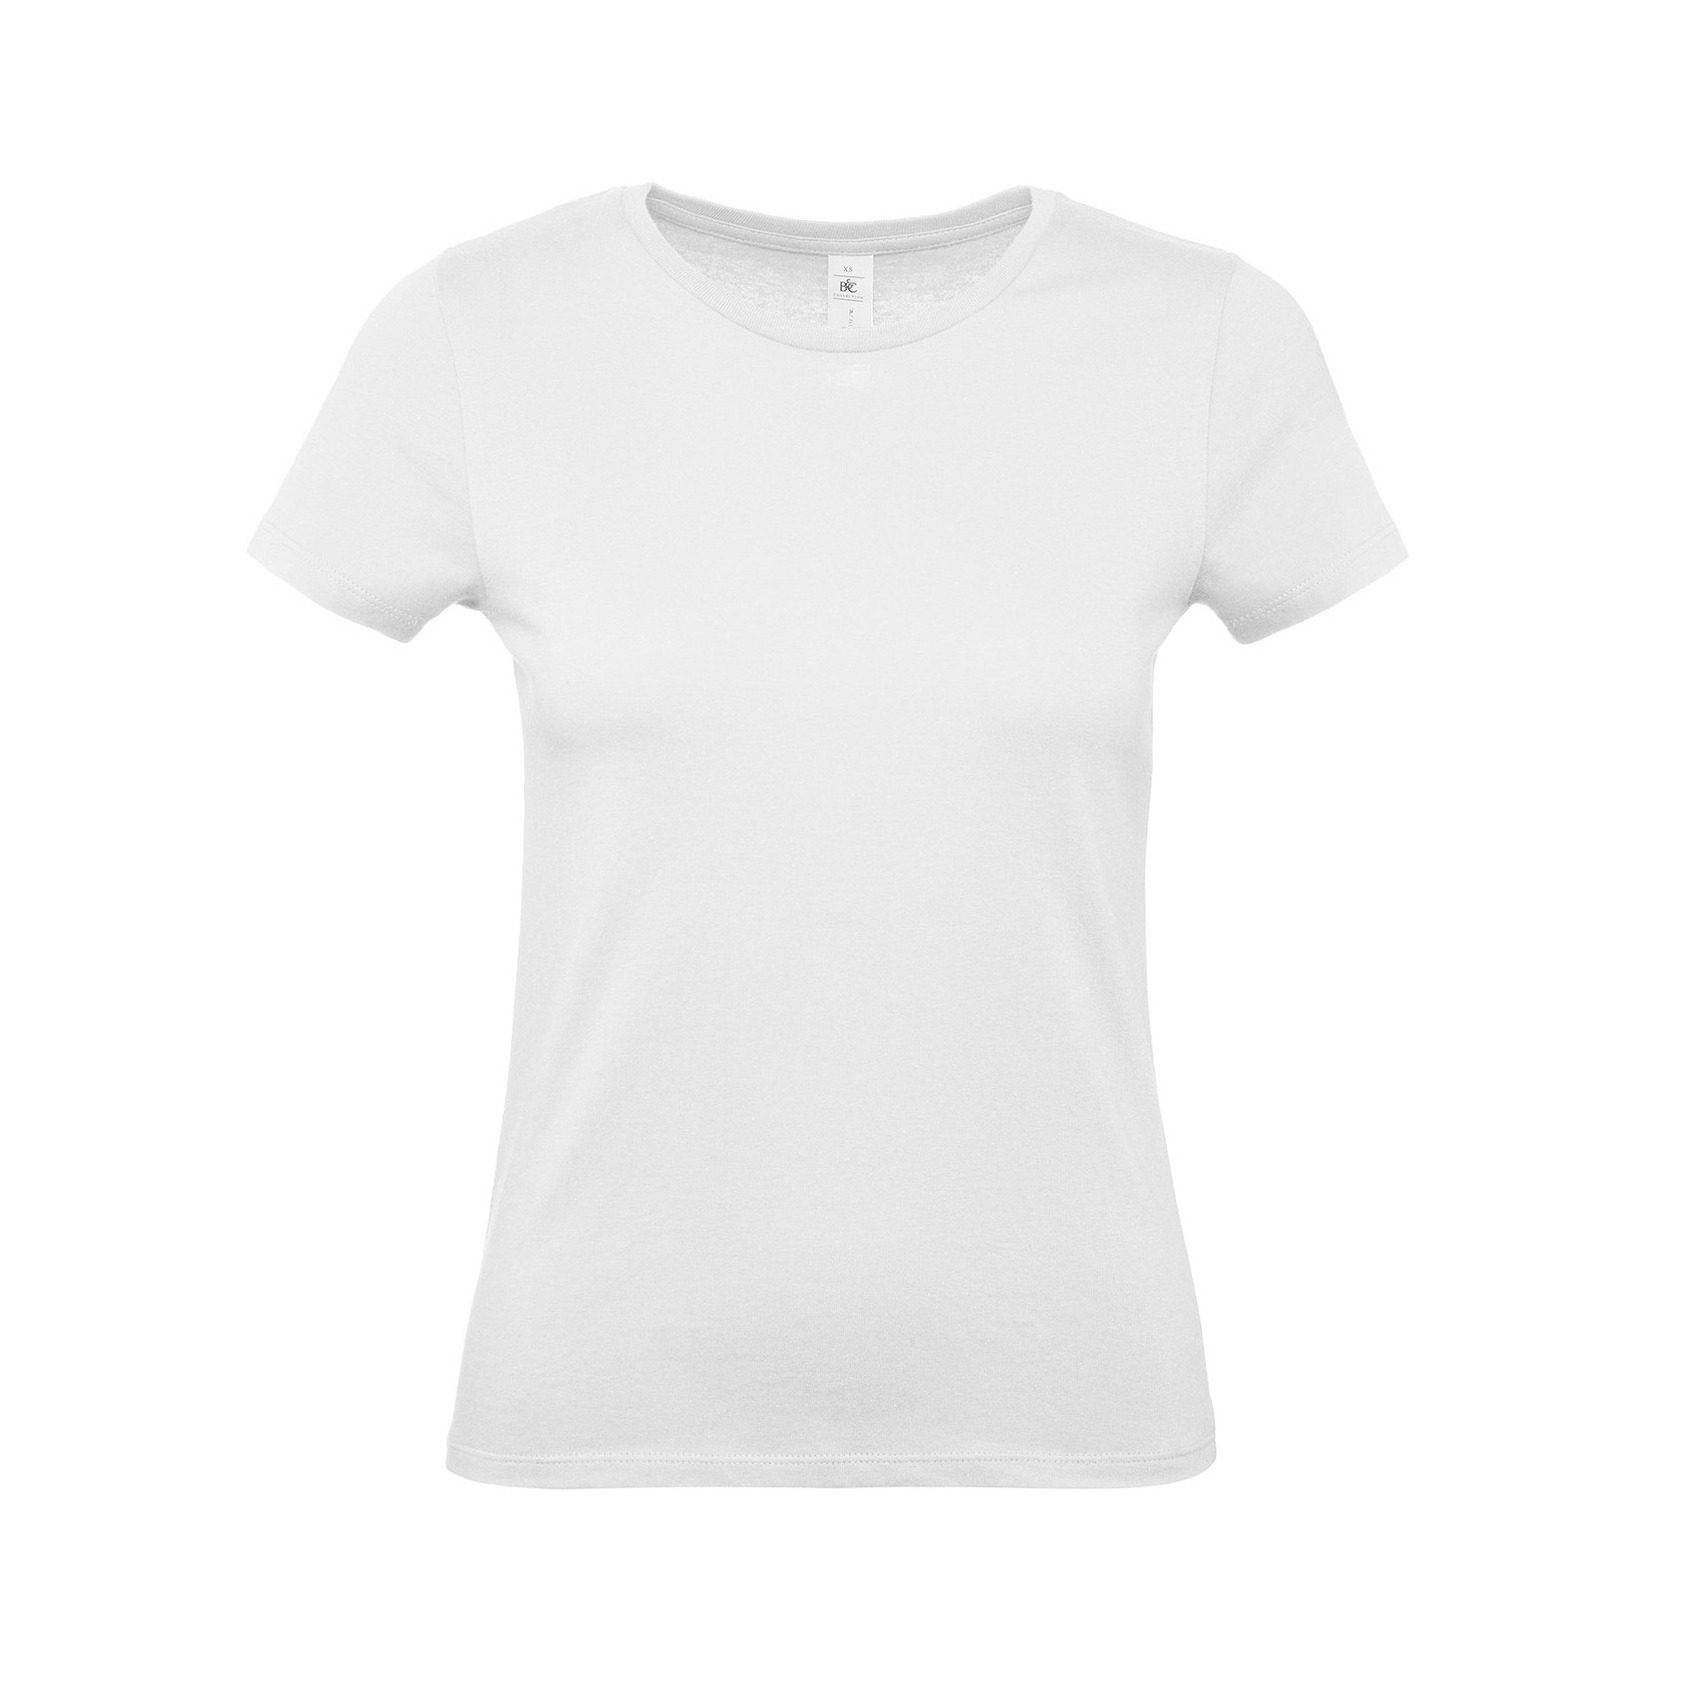 Set van 3x stuks wit basic t-shirts met ronde hals voor dames van katoen, maat: M (38)